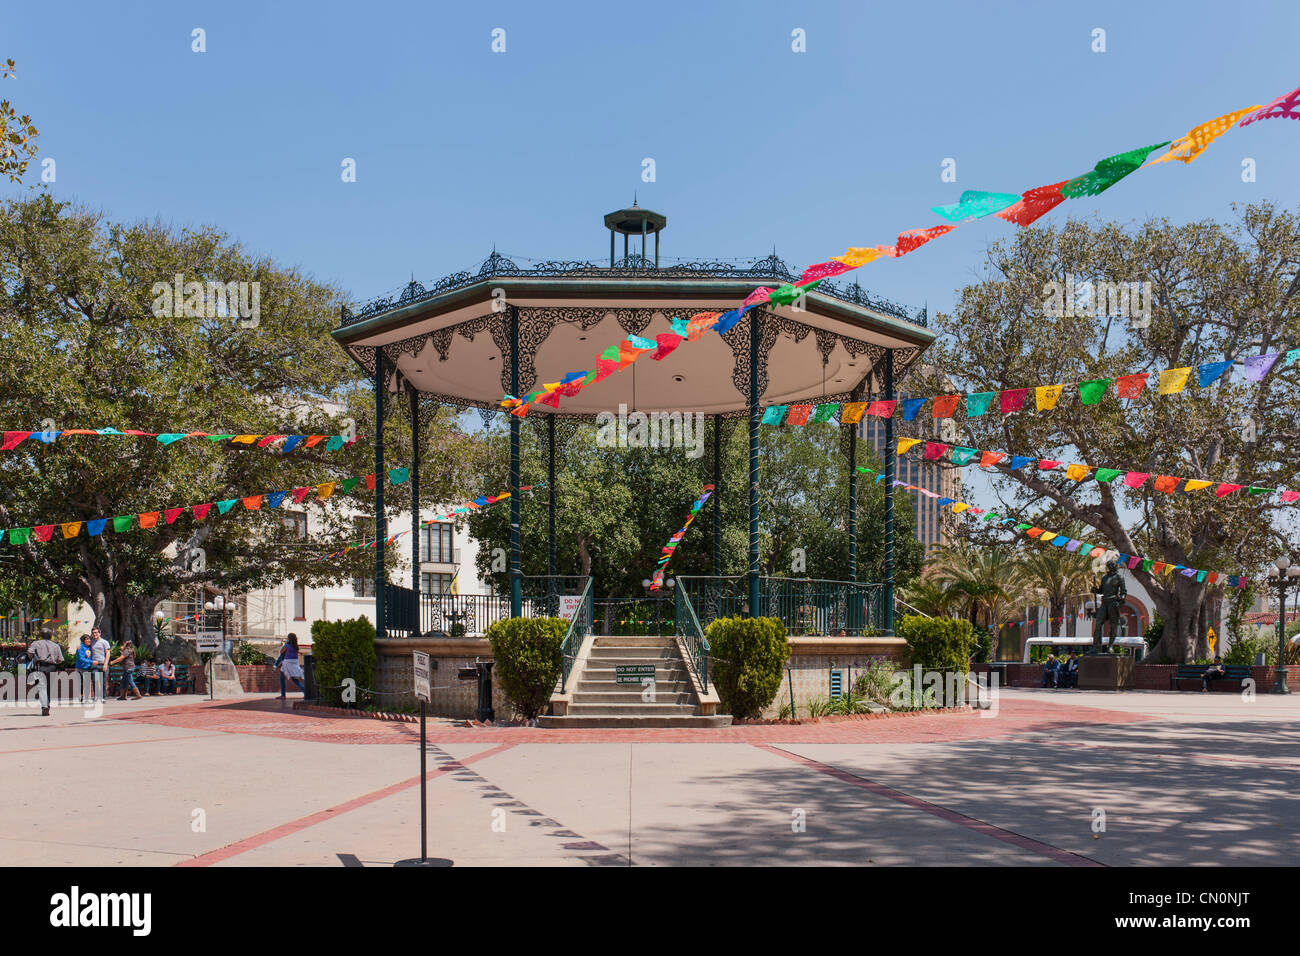 Paseo de La Plaza Bandstand, El Pueblo de Los Angeles Stock Photo